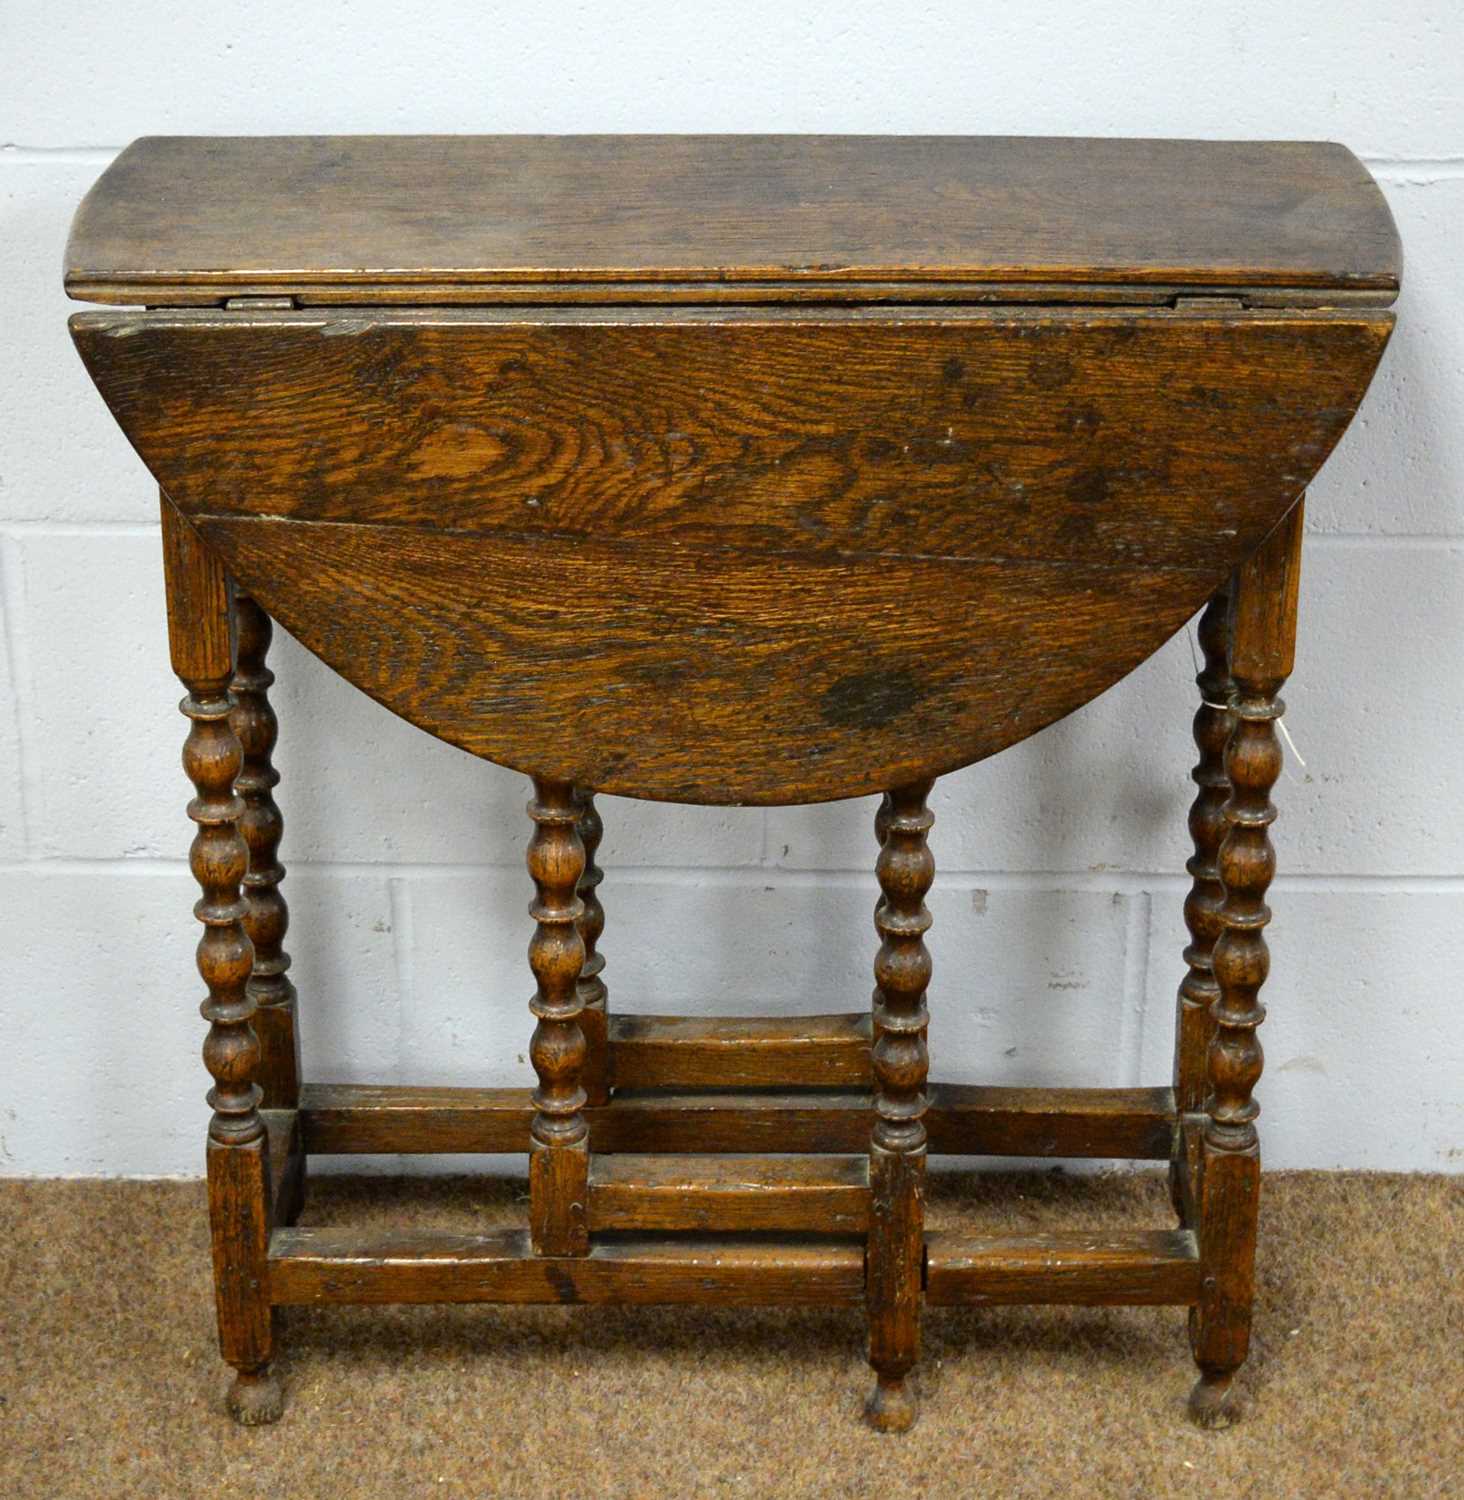 19th C oak gate leg table (small size).